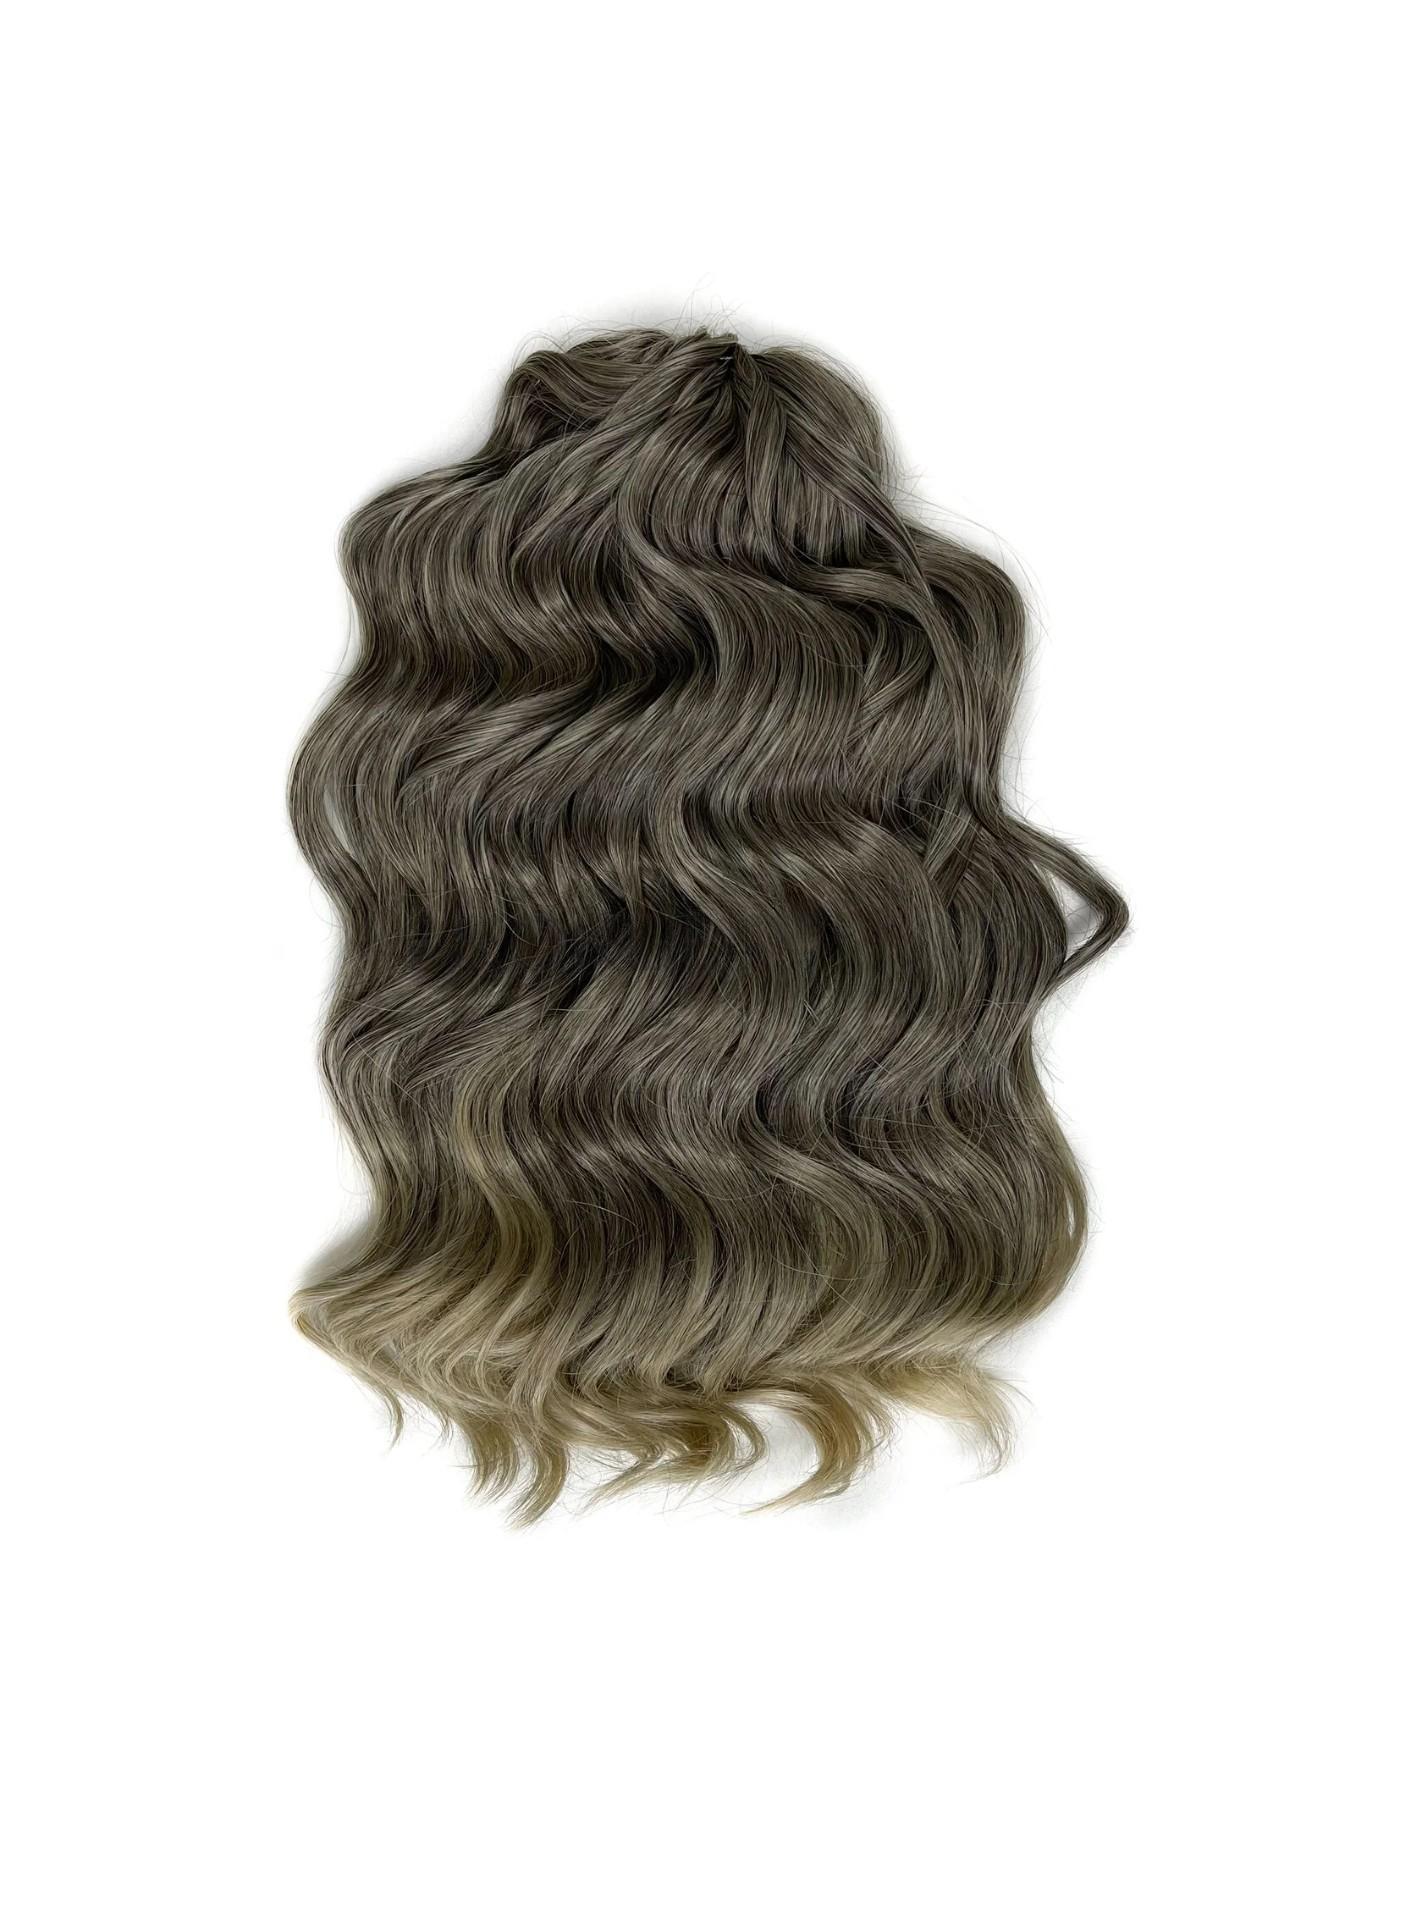 Афрокудри для плетения волос Anna Manasi T4 22 русый длина 40 вес 300г